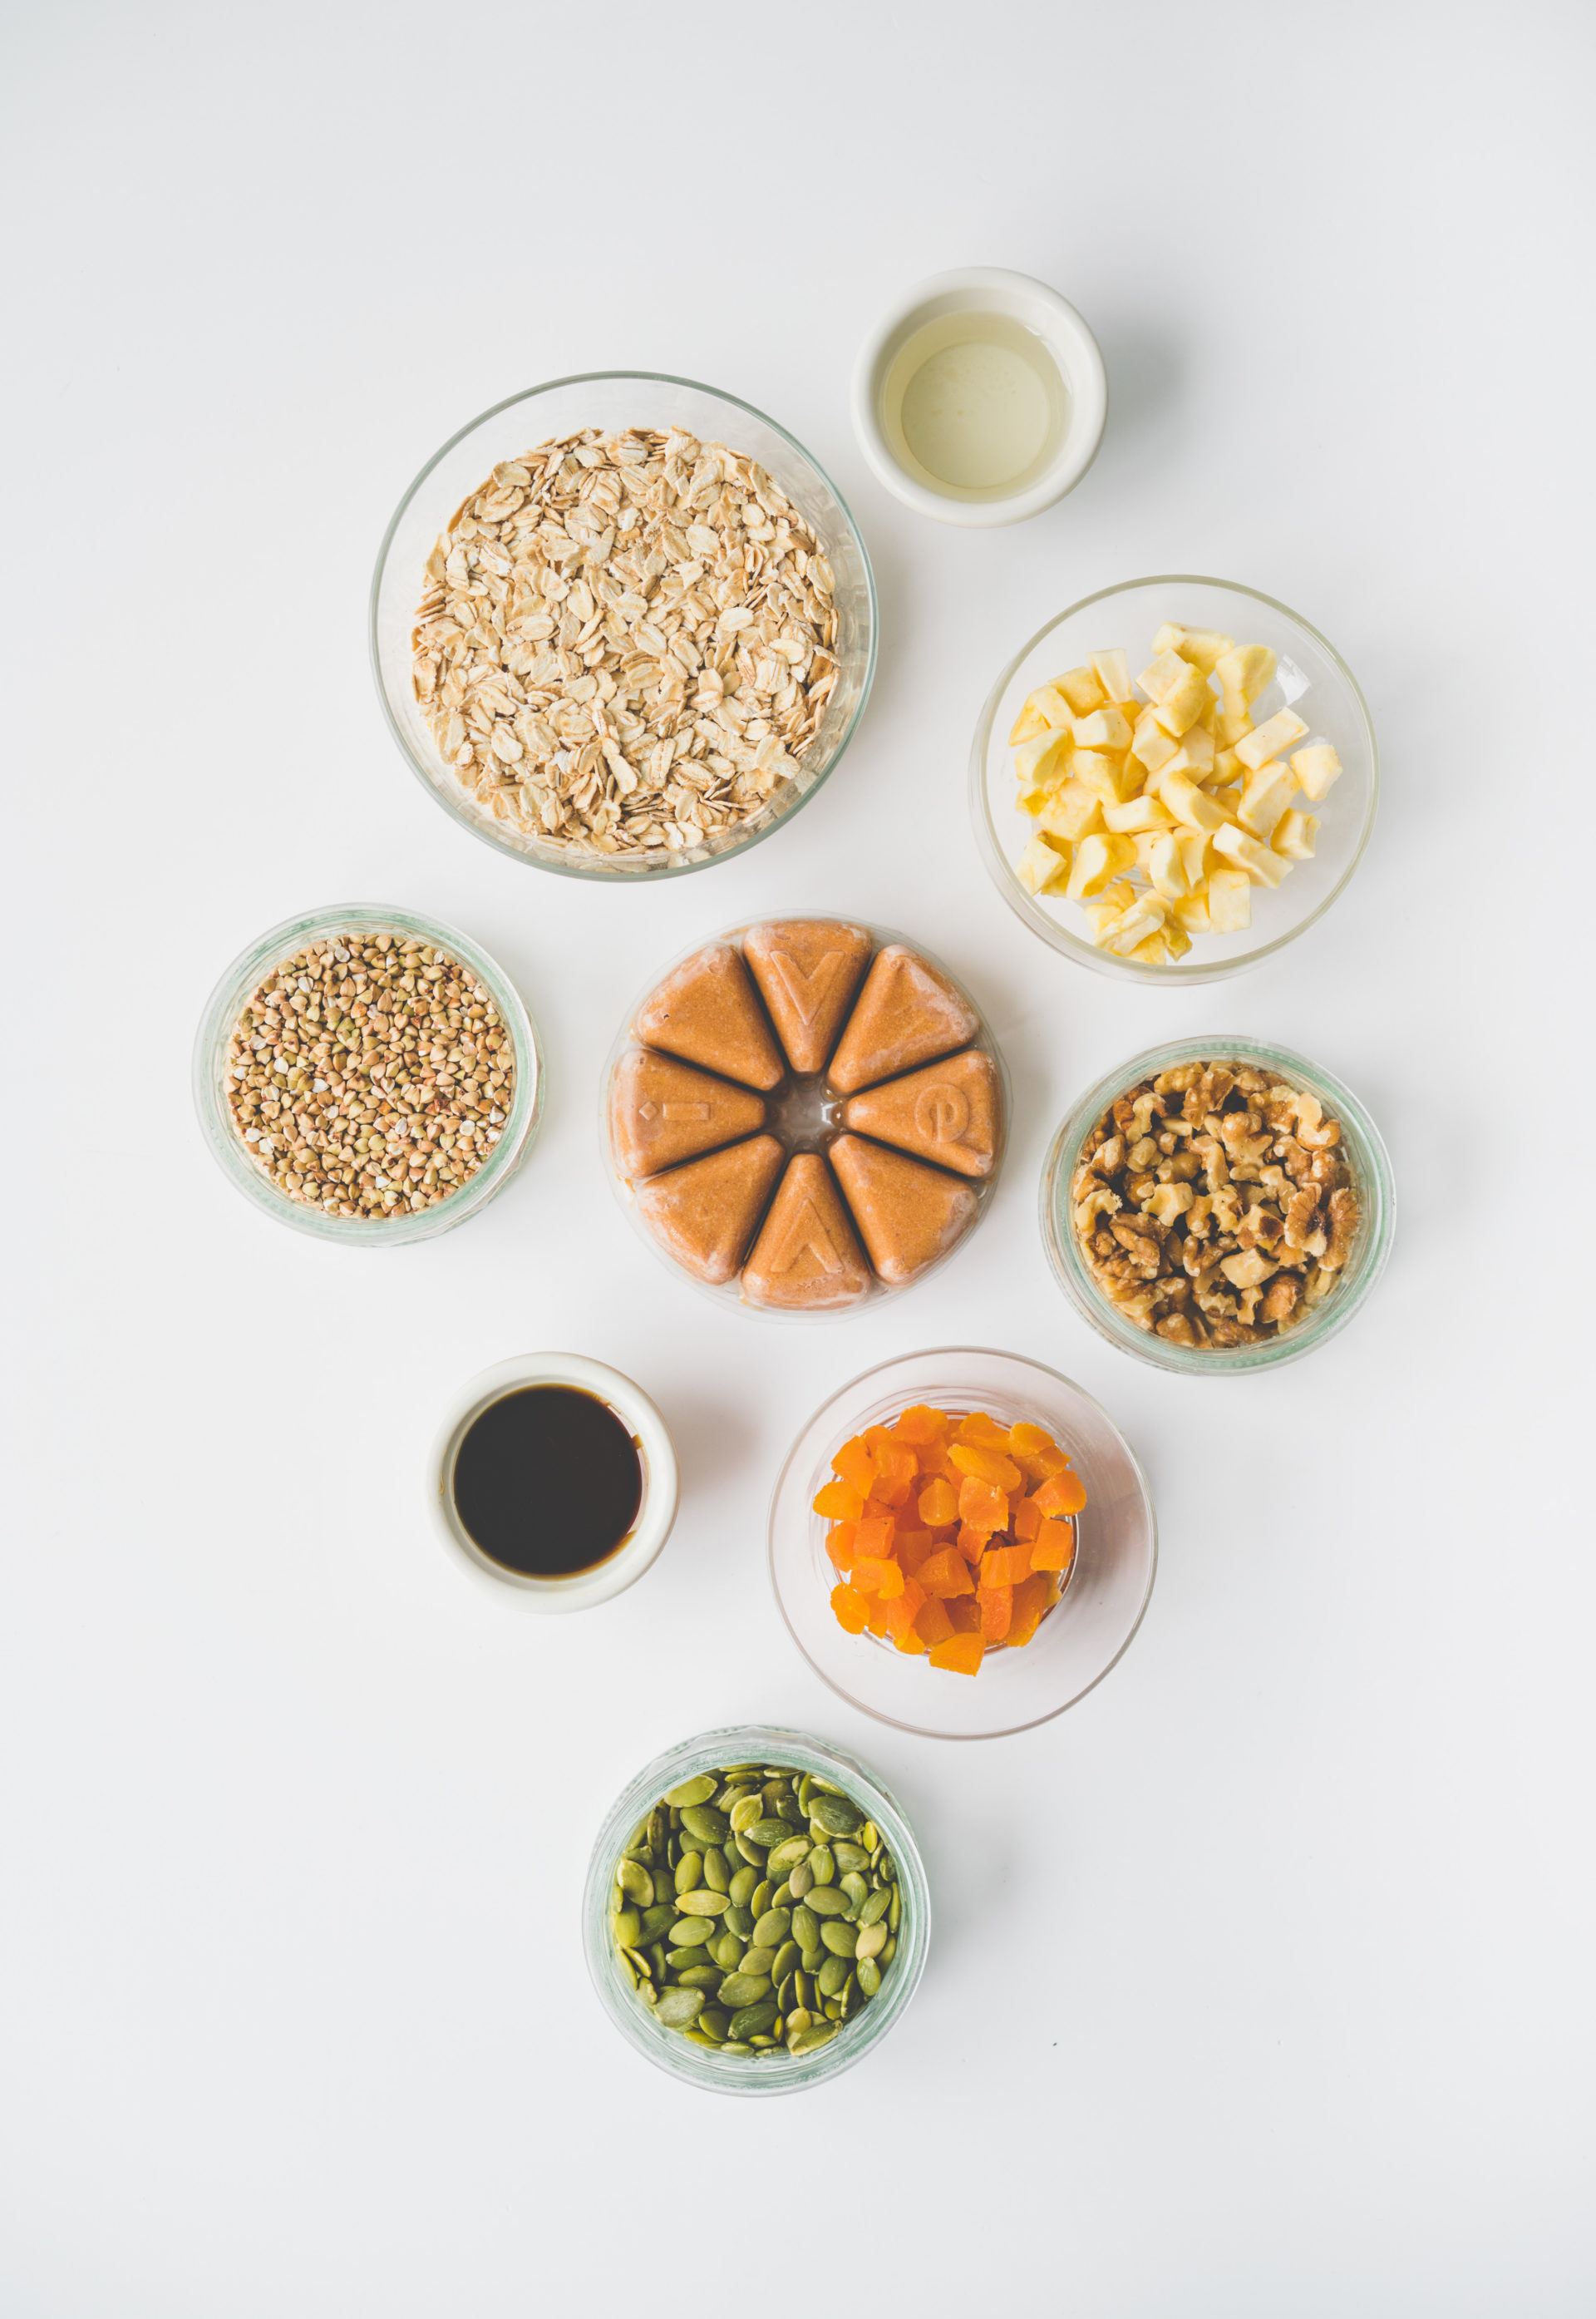 Les ingrédients pour notre recette de granola maison santé